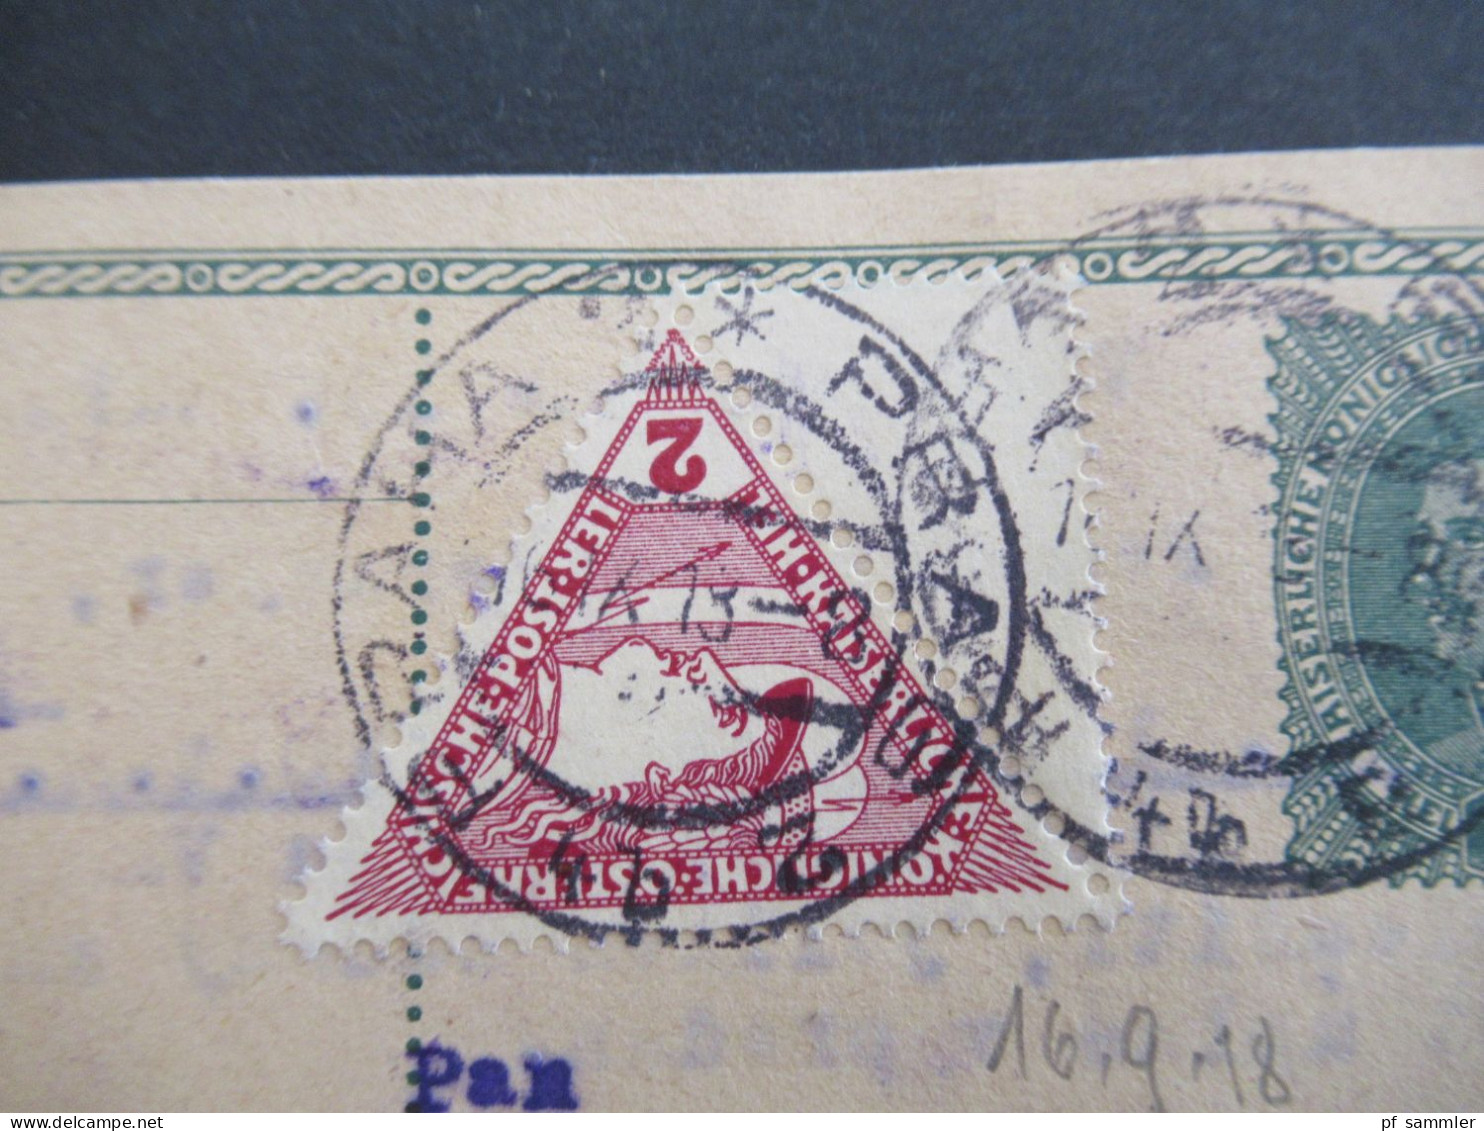 Österreich 1916 / 18 Ganzsache 8 Heller Mit Zusatzfrankatur Drucksachen Eilmarke Mi.Nr.217 Mit 1/2 Leerfeld Prag - Kiew - Briefkaarten